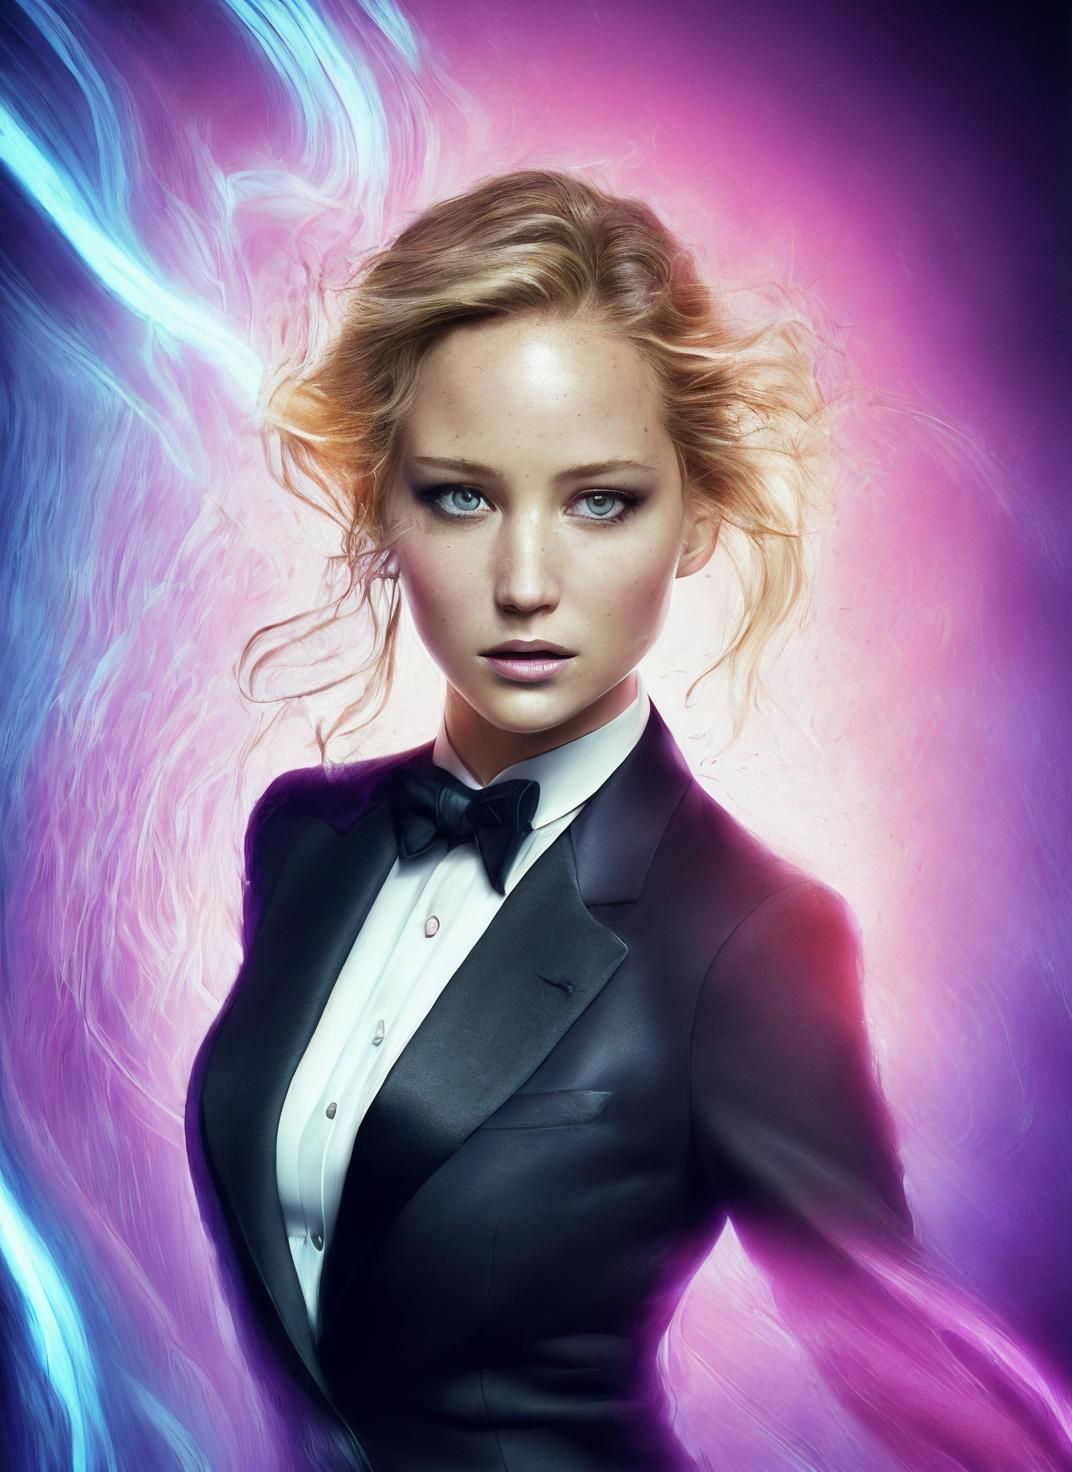 Jennifer Lawrence image by malcolmrey